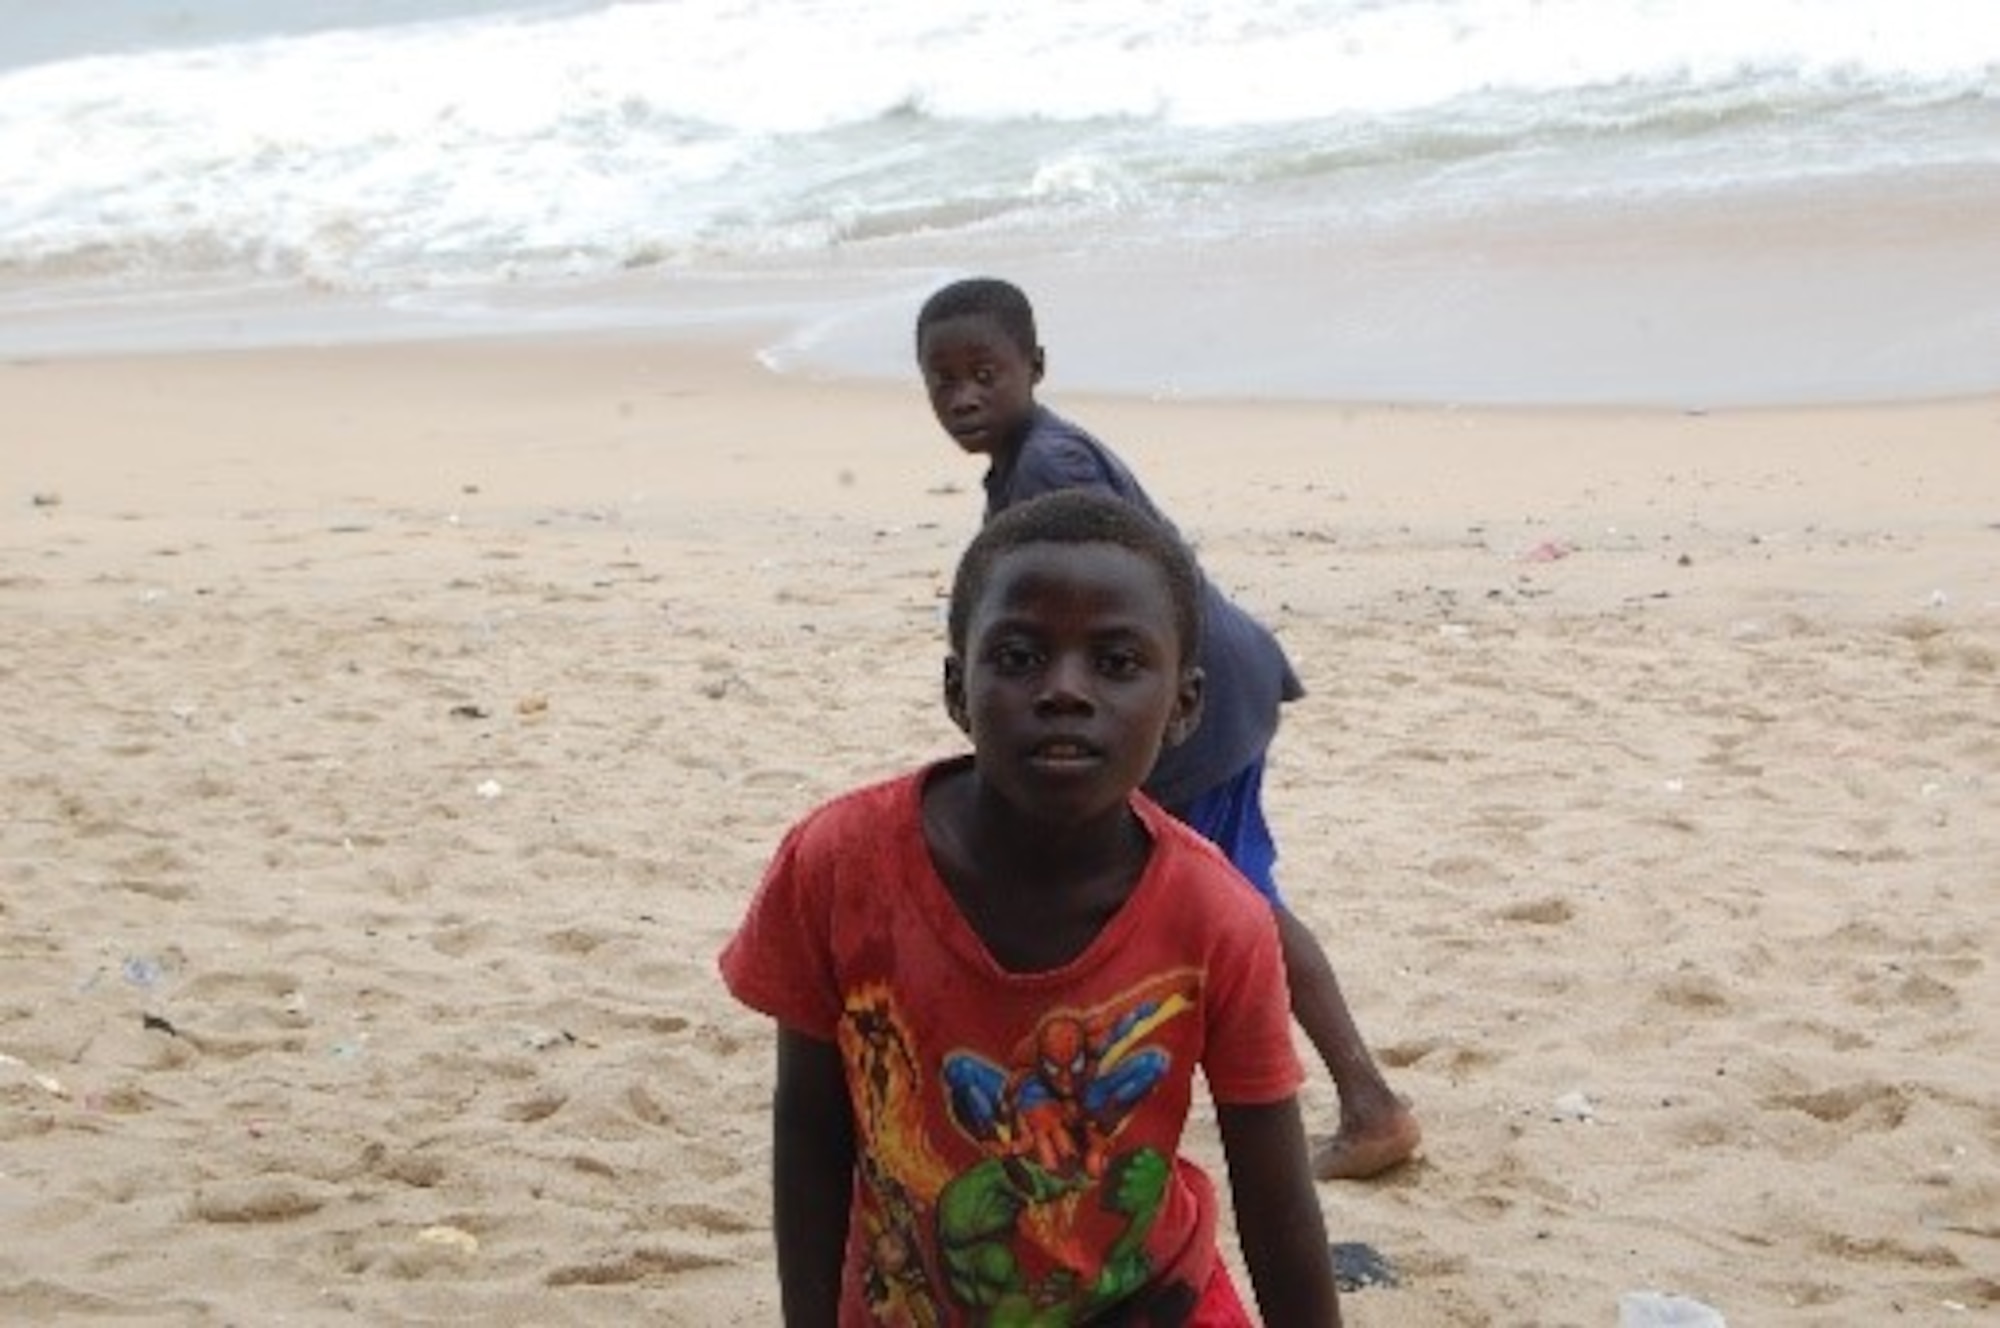 Ghanaian orphan boys playing on a beach. (Courtesy photo/Breanna McGowan)